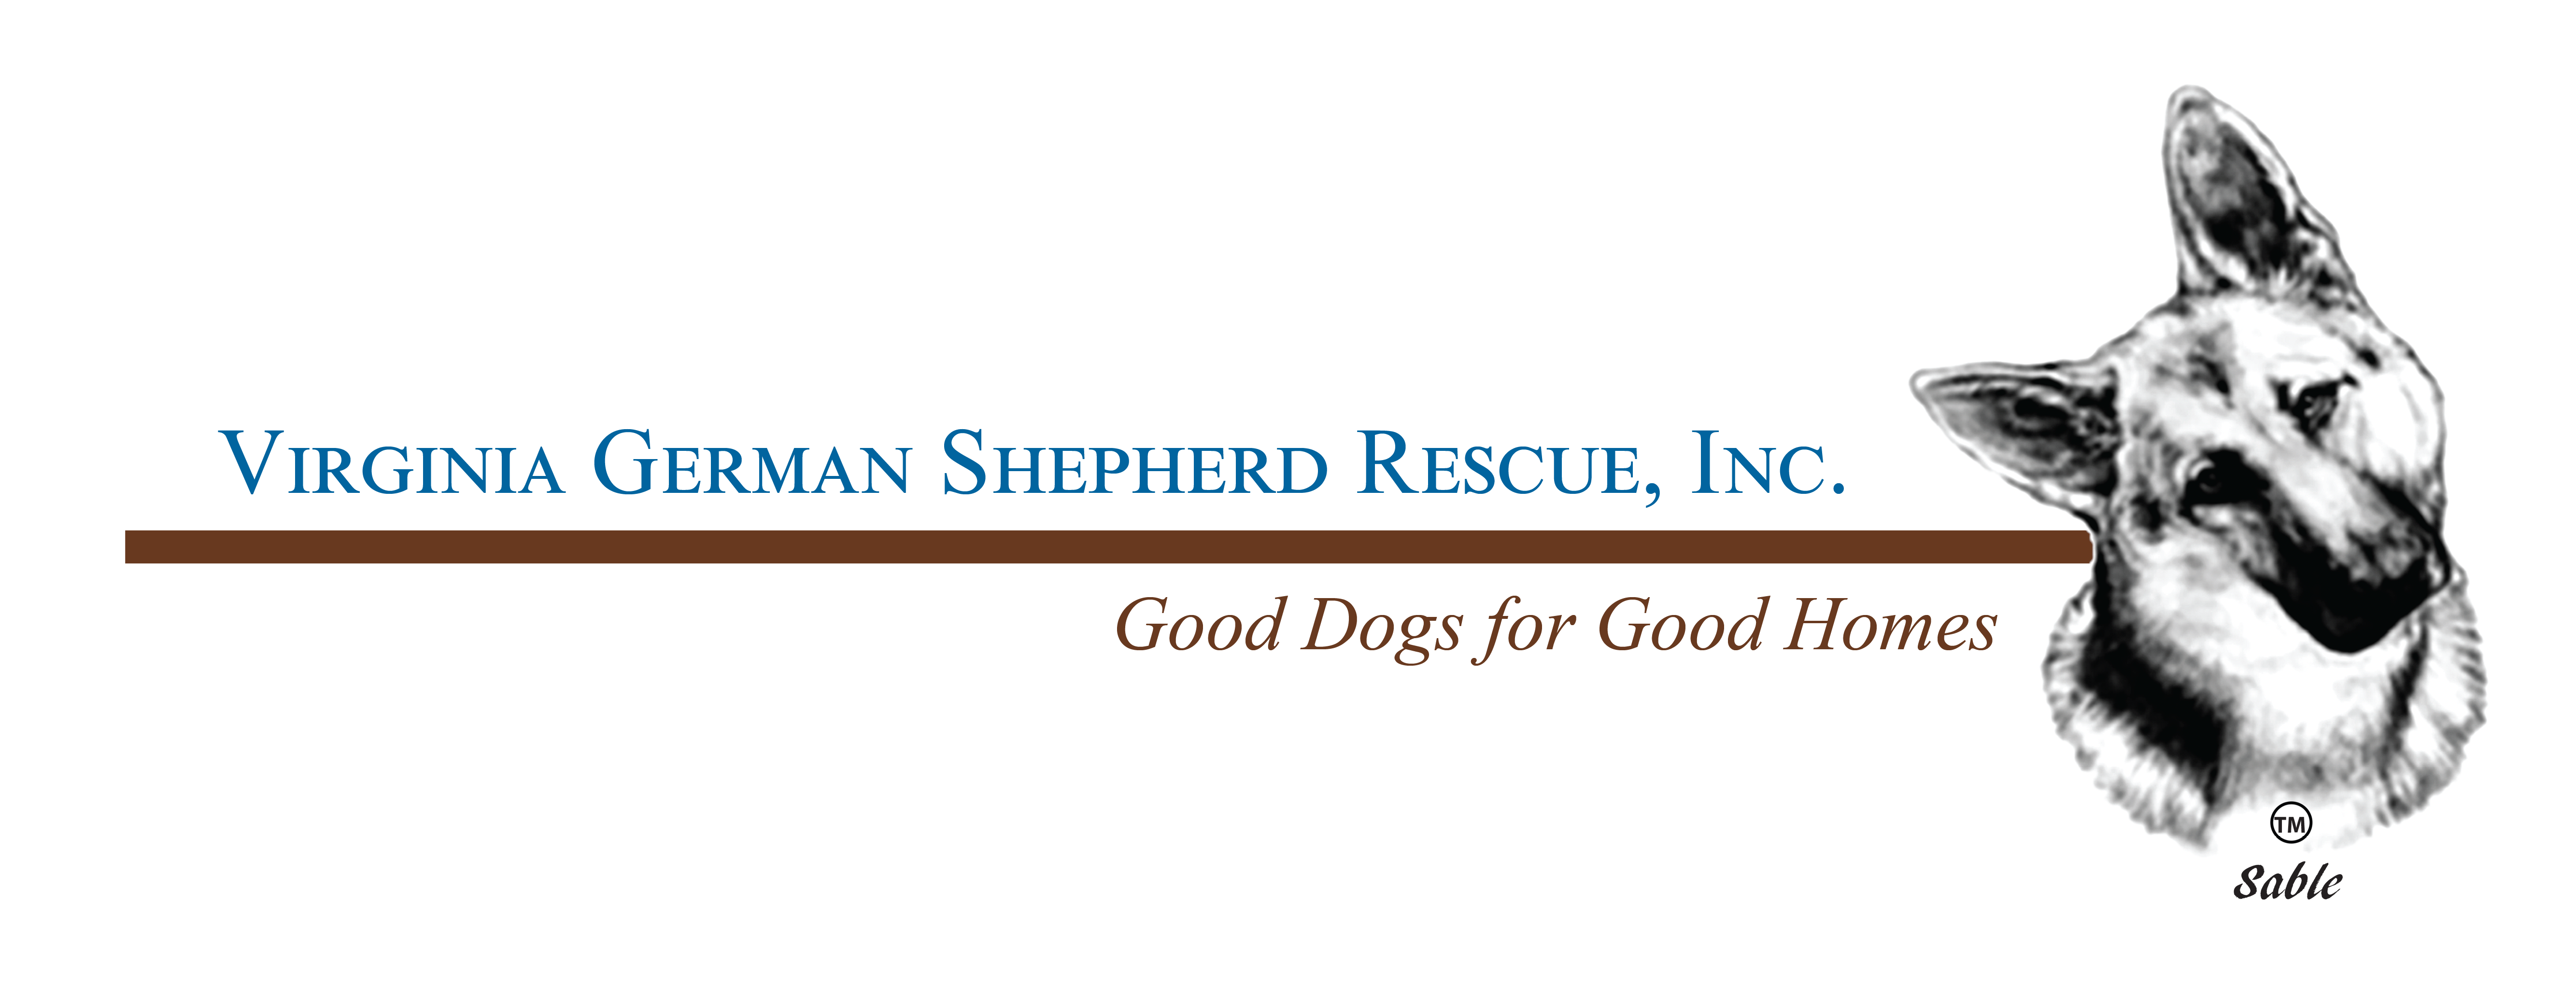 Virginia German Shepherd Rescue